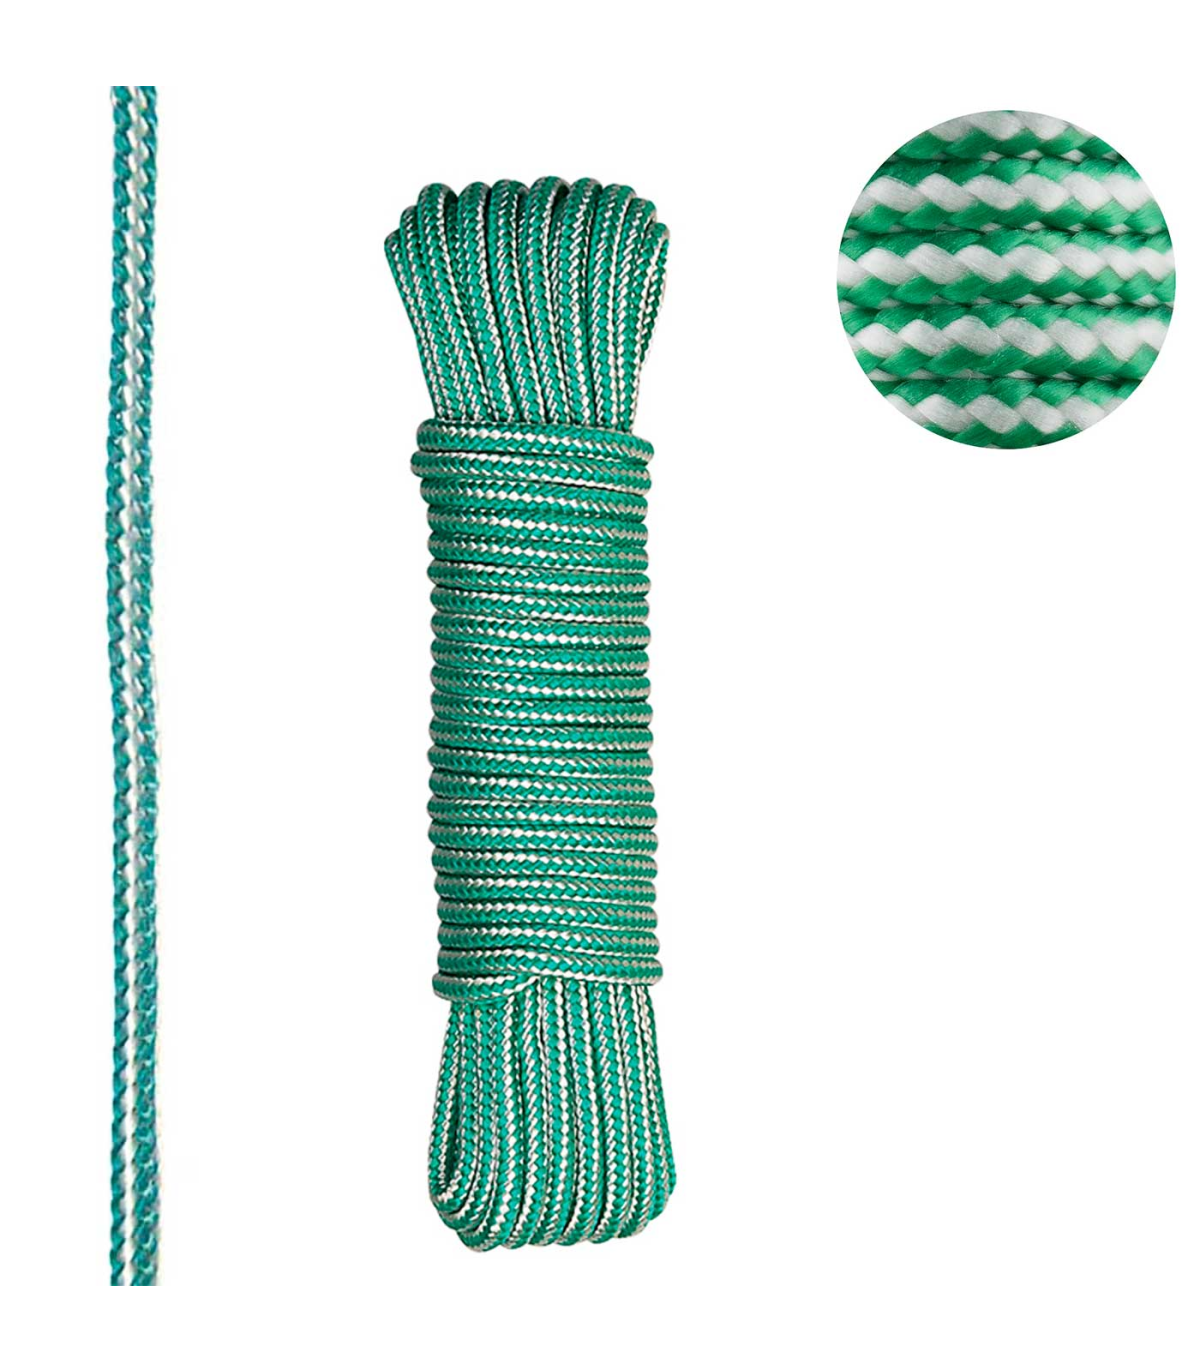 Tradineur - Cuerda trenzada de polipropileno, madeja de cordón resistente para tendedero, colgar uso interior y exterior (